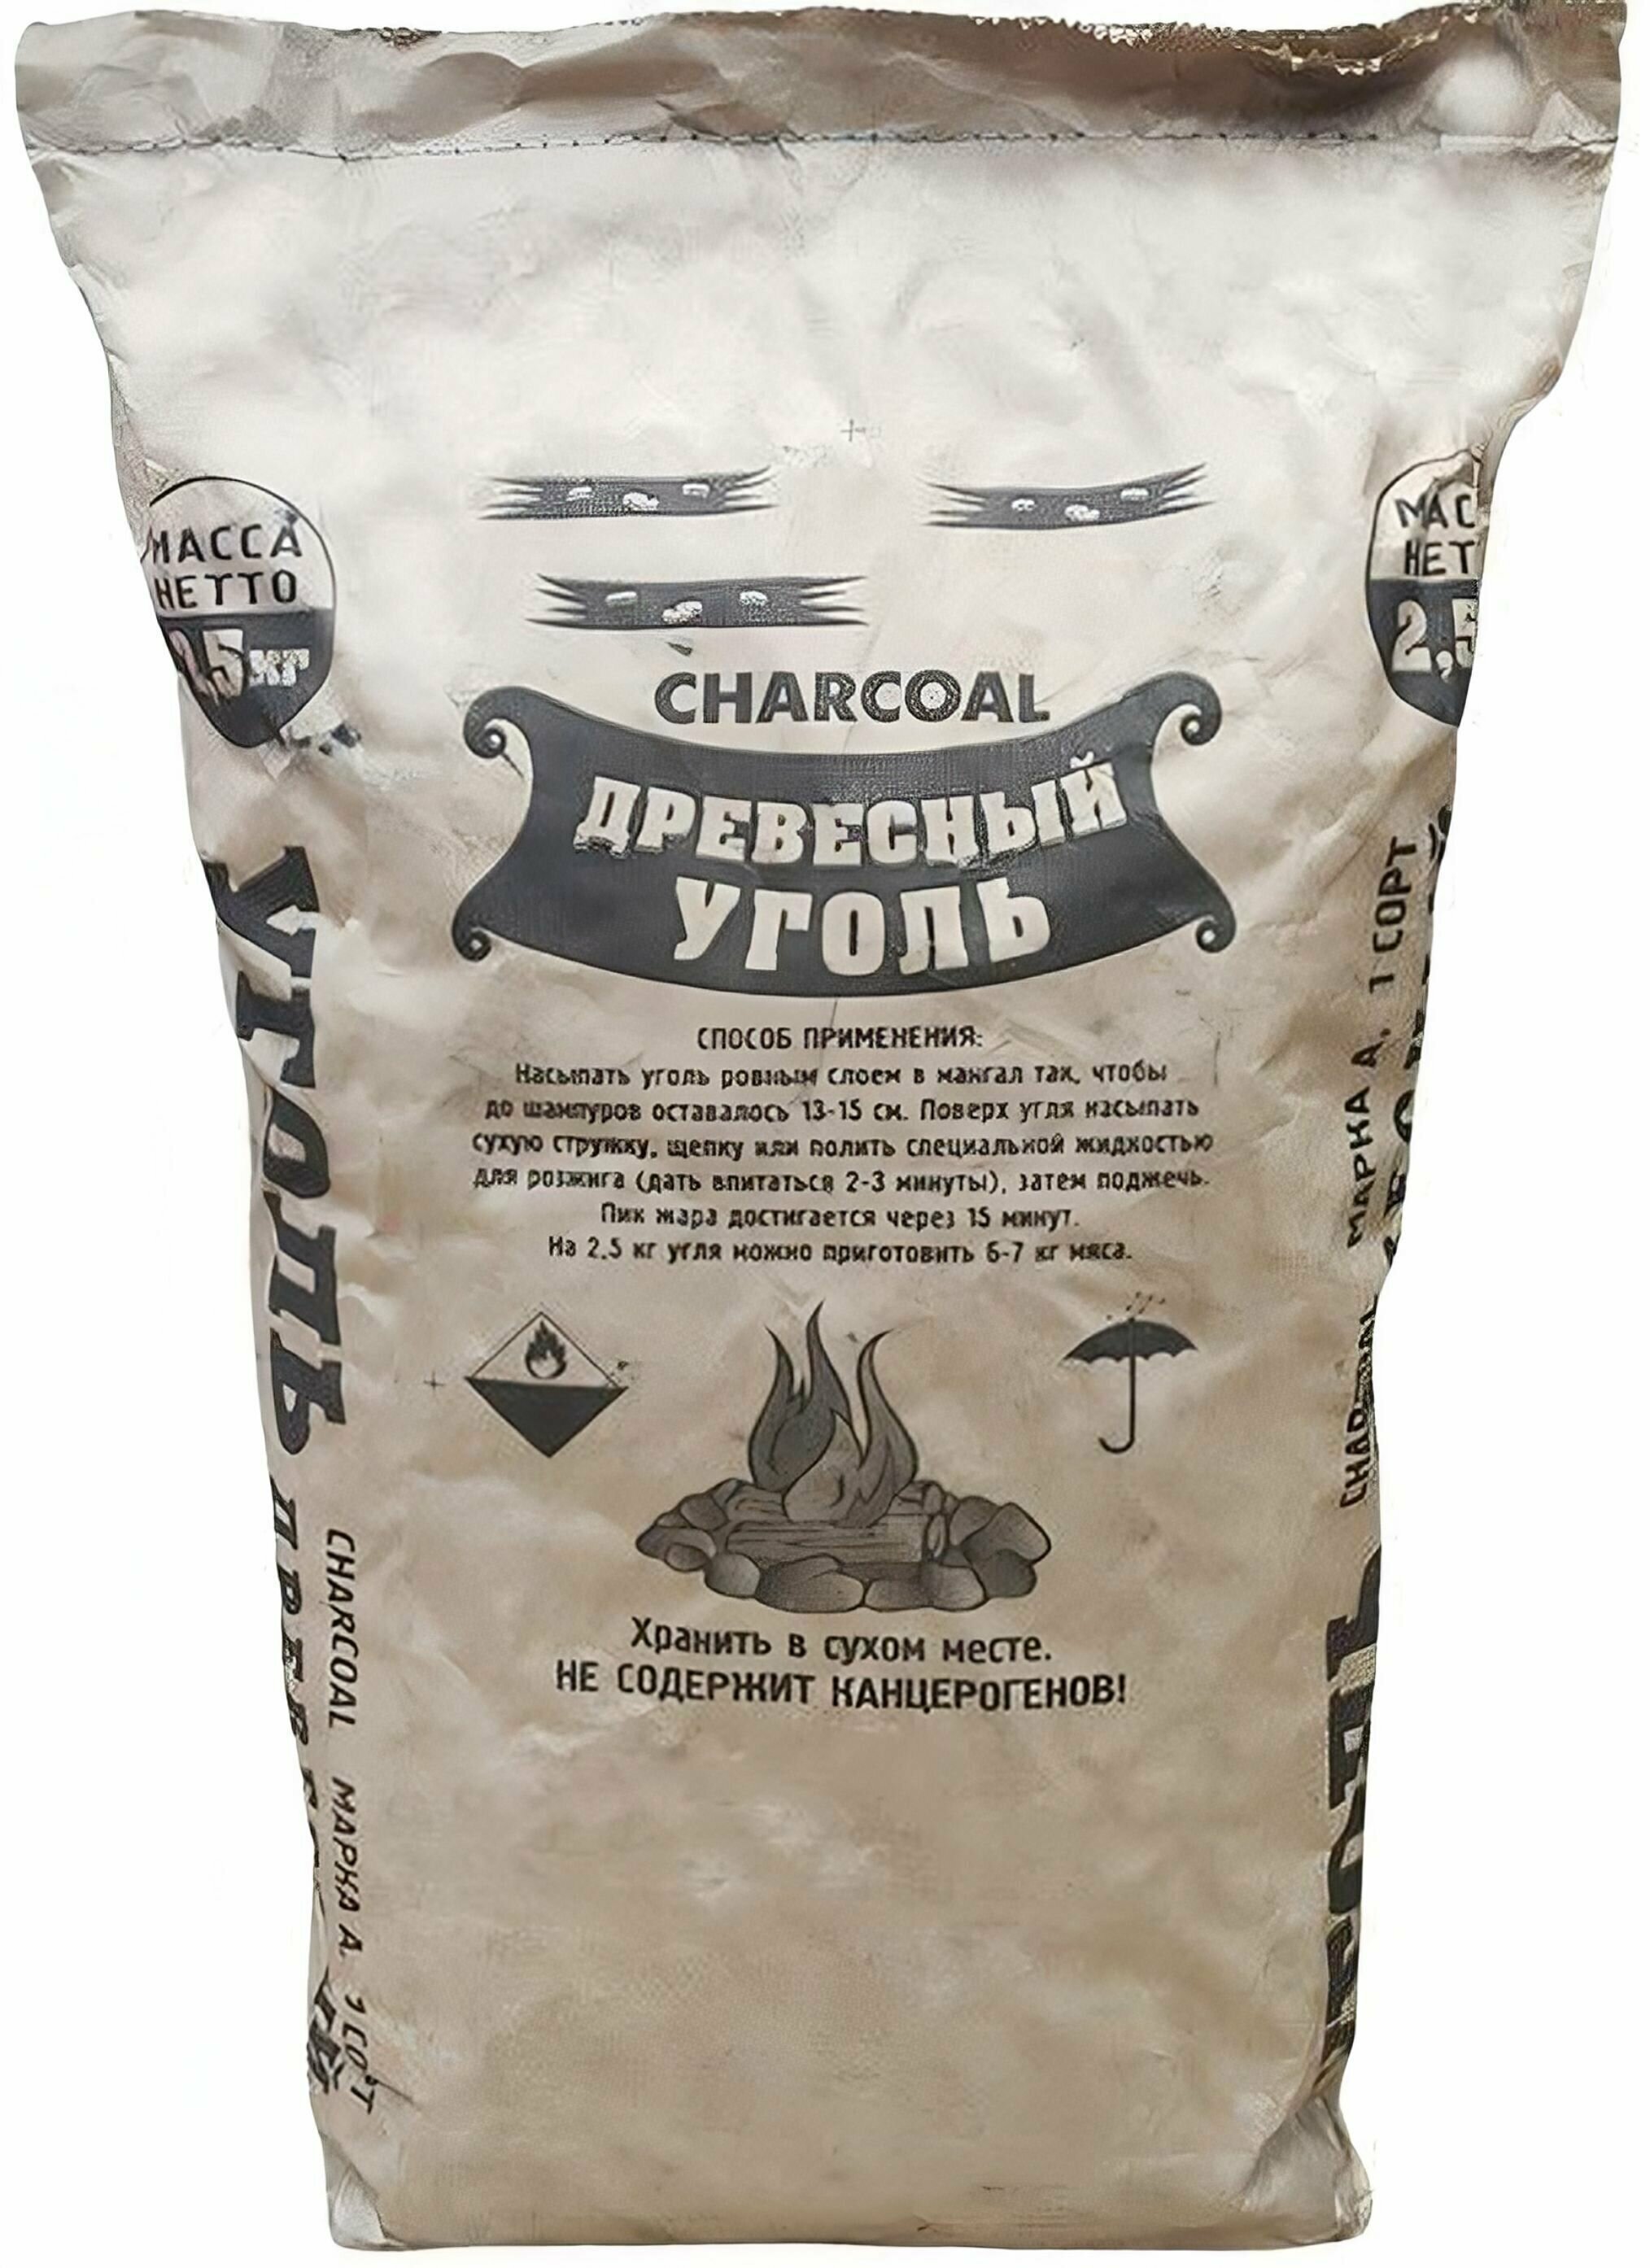 Уголь березовый 25 кг: из экологически чистой березовой древесины; предназначен для приготовления мяса рыбы птицы и других продуктов а так же в качестве топлива для каминов и печей